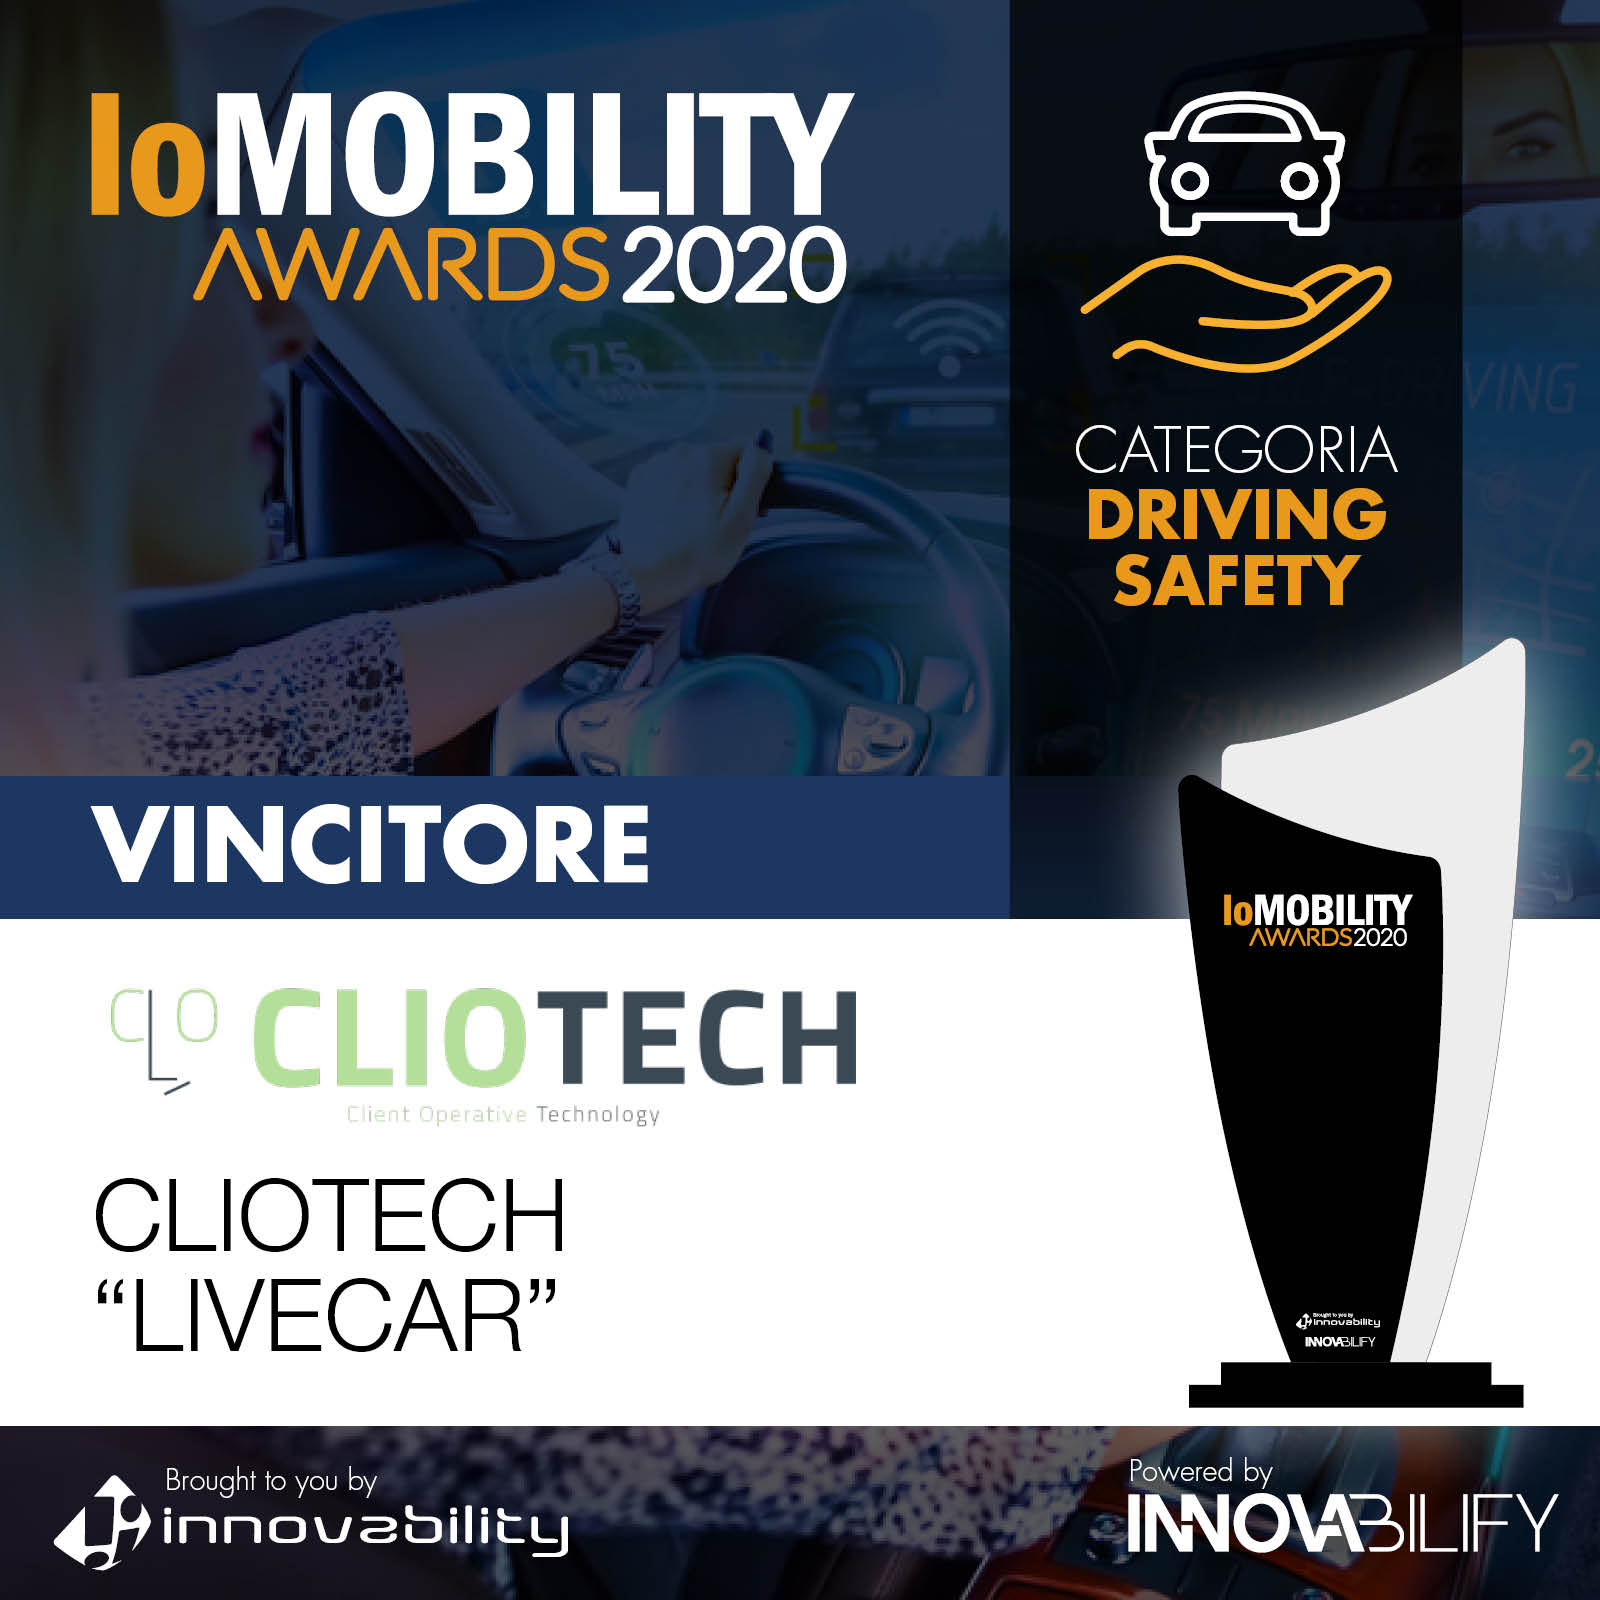 IoMOBILITY AWARDS: primo premio a Cliotech per la driving safety